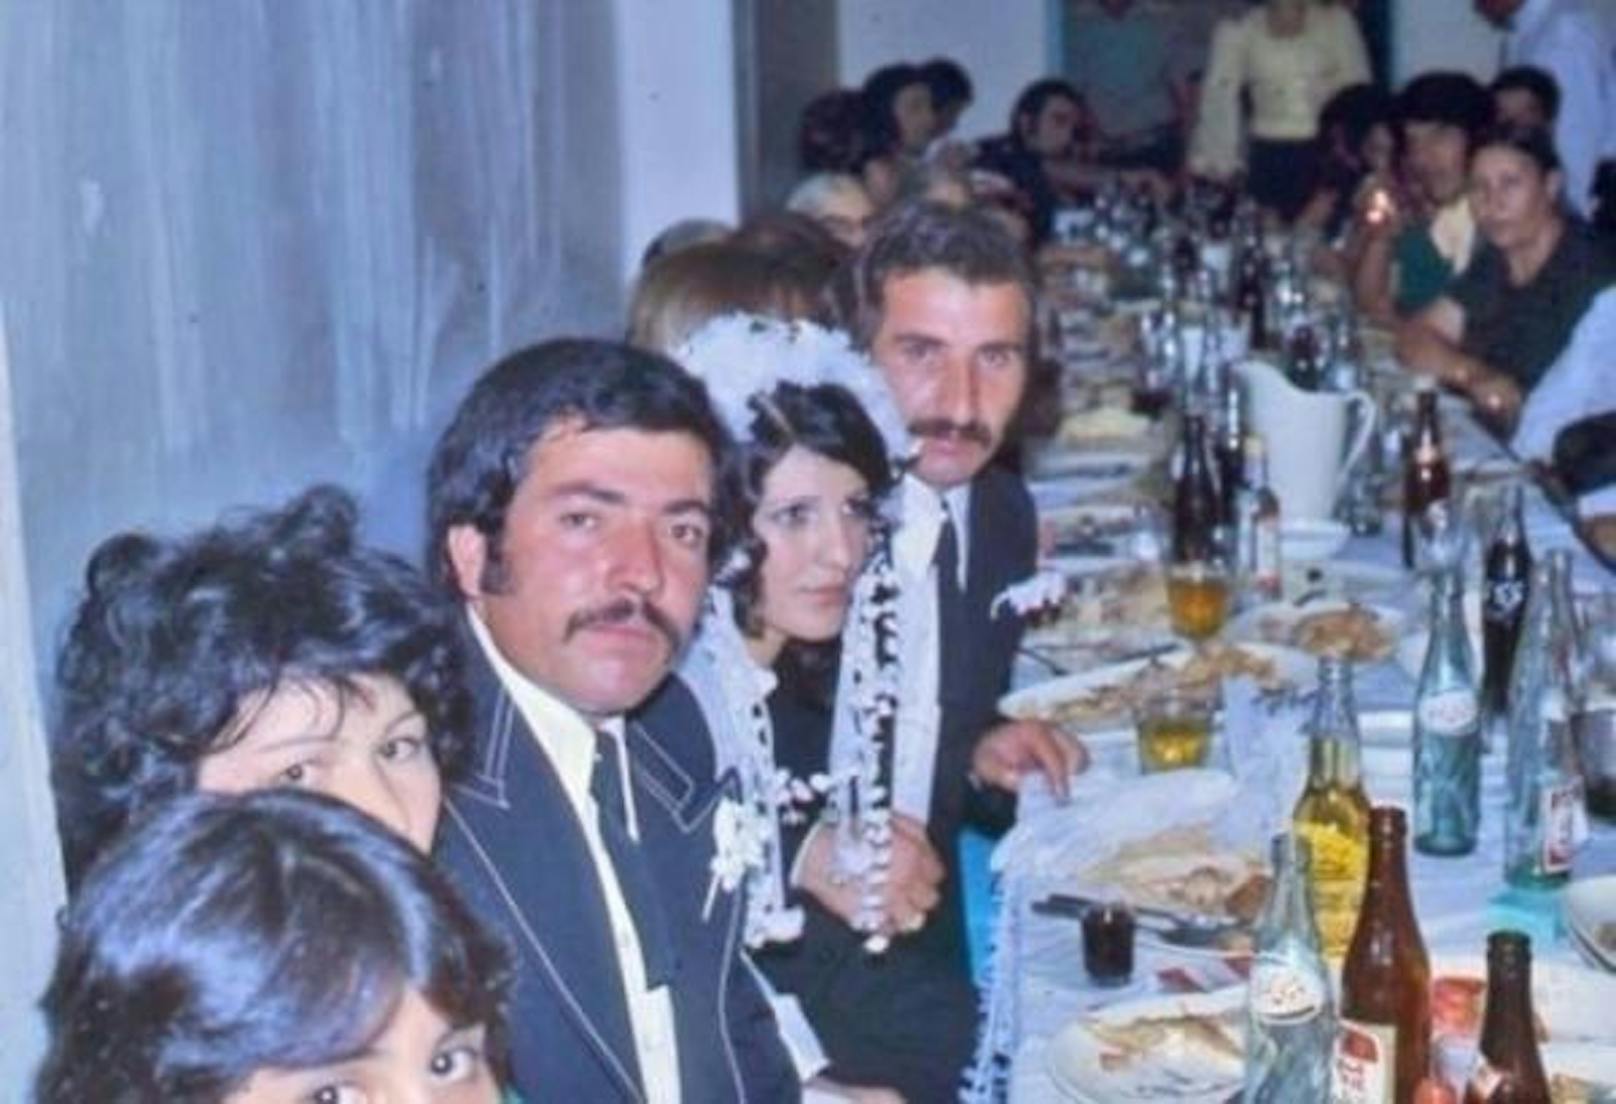 Diese Hochzeitsgesellschaft von 1975 in Irans Hauptstadt Teheran sieht nicht so viel anders aus als ähnliche Festgesellschaften in europäischen Ländern zu dieser Zeit. Selbst Bierflaschen stehen auf dem Tisch.